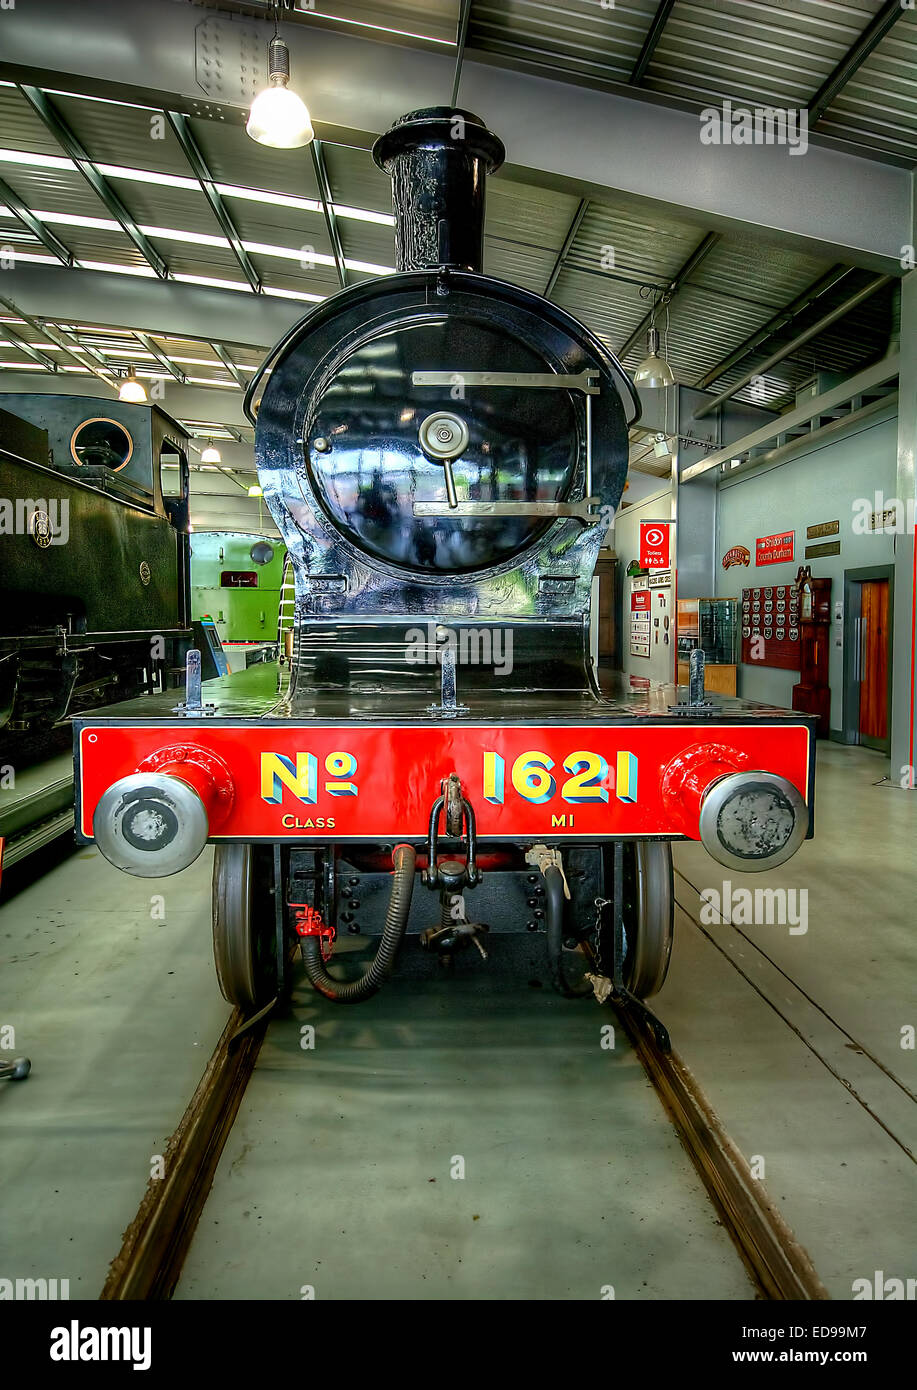 Shildon Railway Museum, County Durham Stock Photo